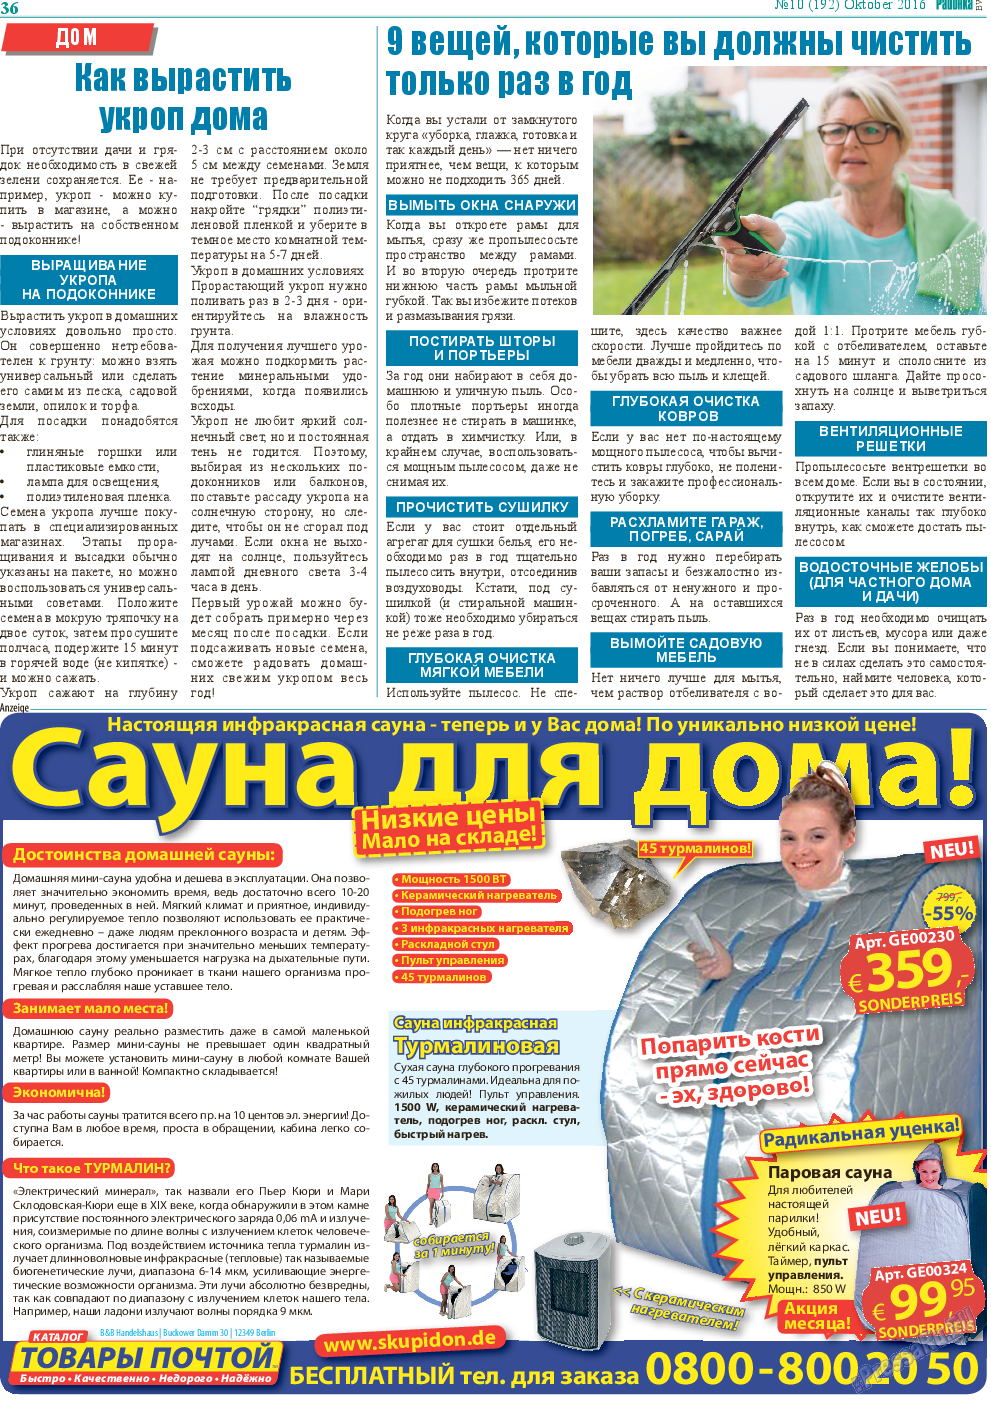 Районка-Süd-West, газета. 2016 №10 стр.36